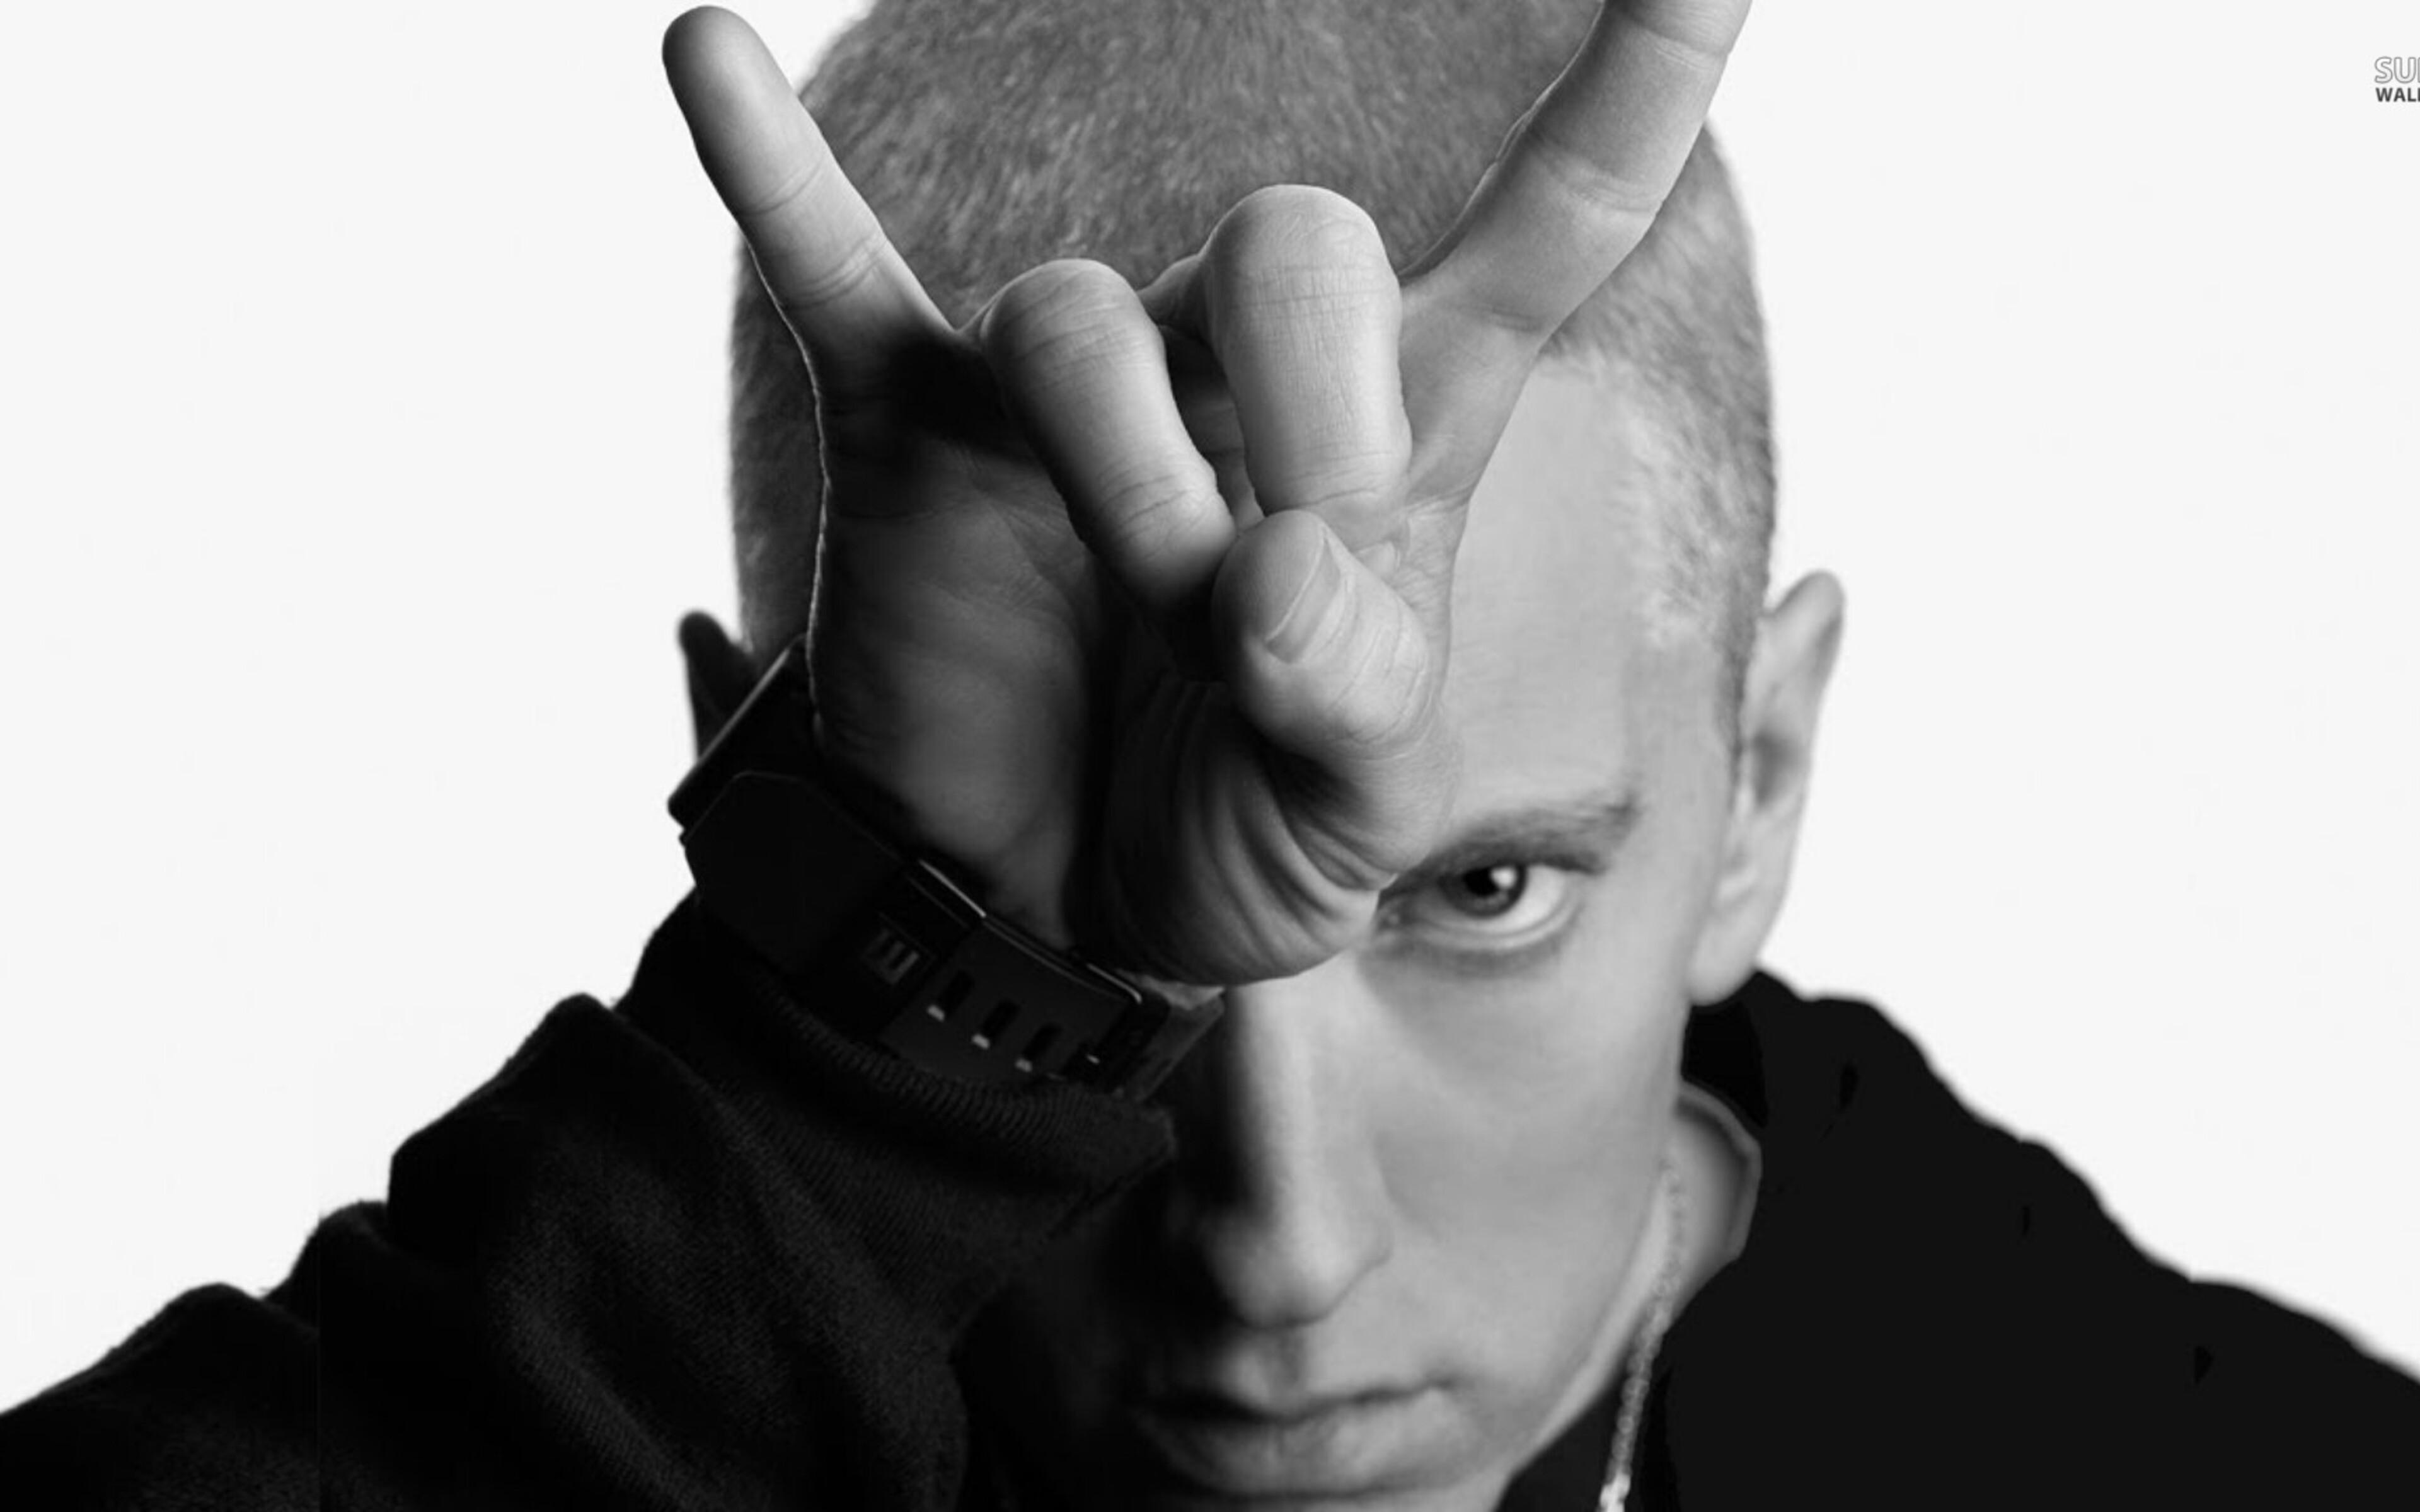 3840 x 2400 · jpeg - 3840x2400 Eminem Rapper 4k HD 4k Wallpapers, Images, Backgrounds ...